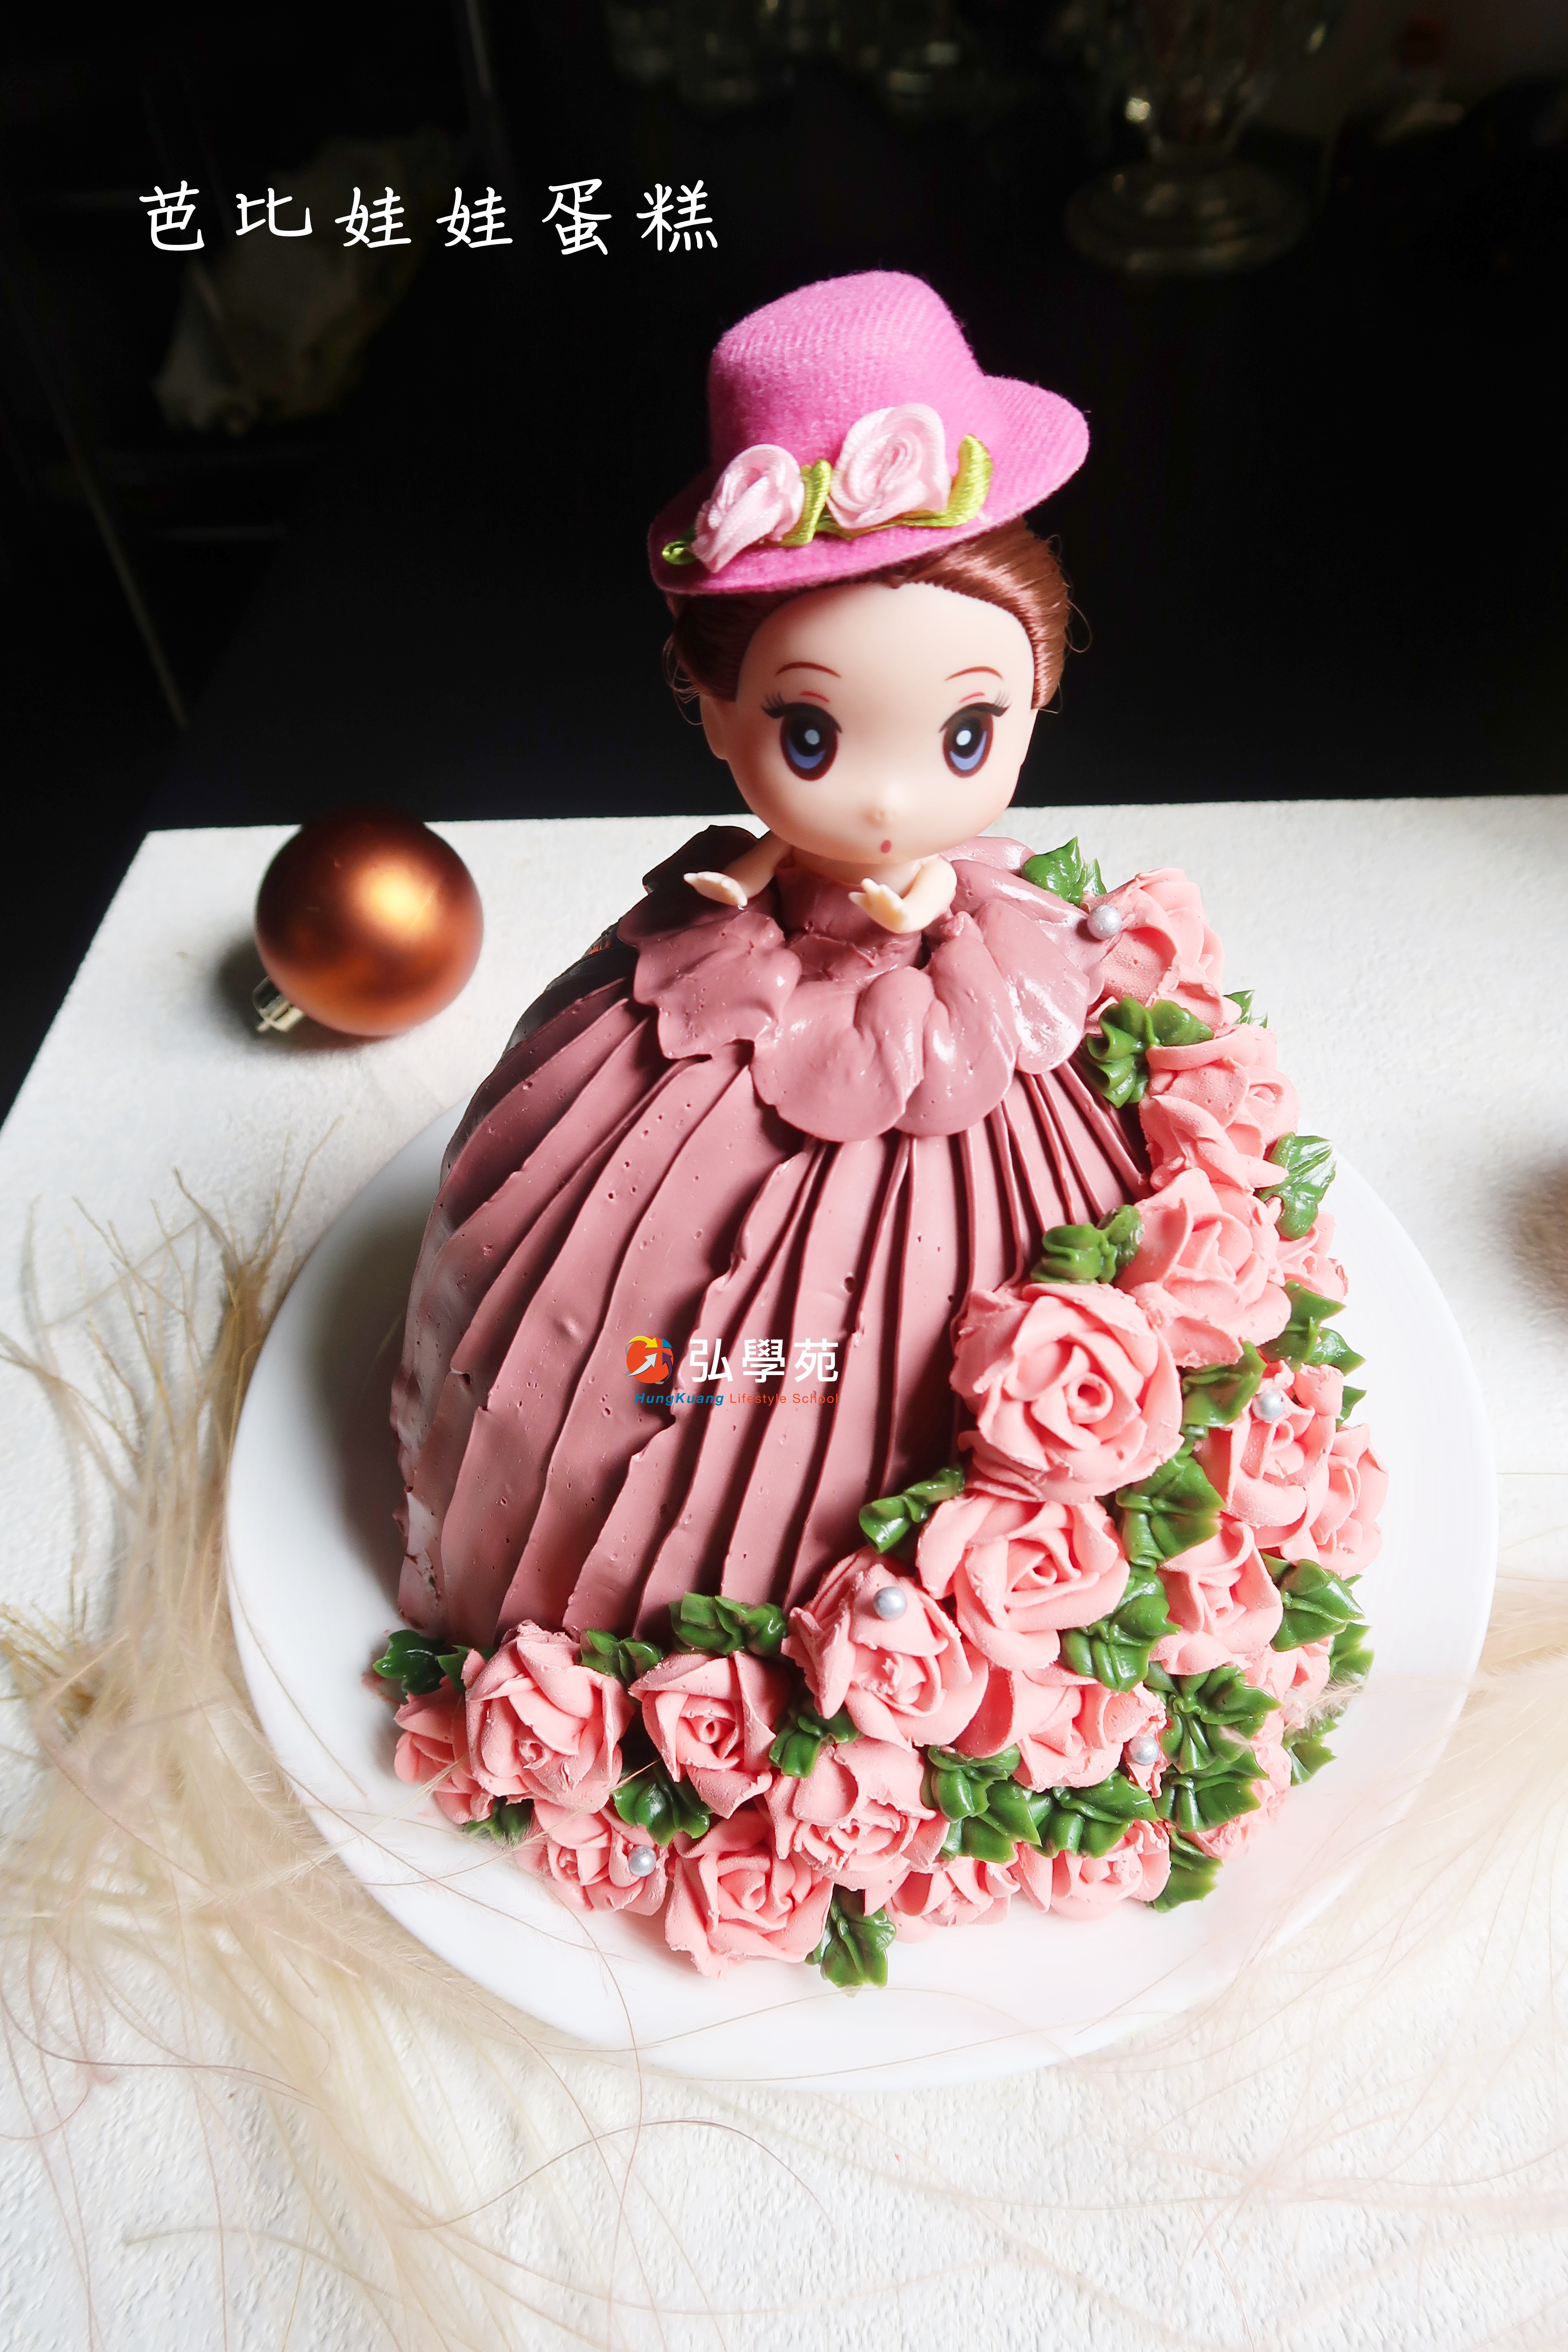 小E厨房——芭比公主蛋糕_芭比公主蛋糕_emile的日志_美食天下